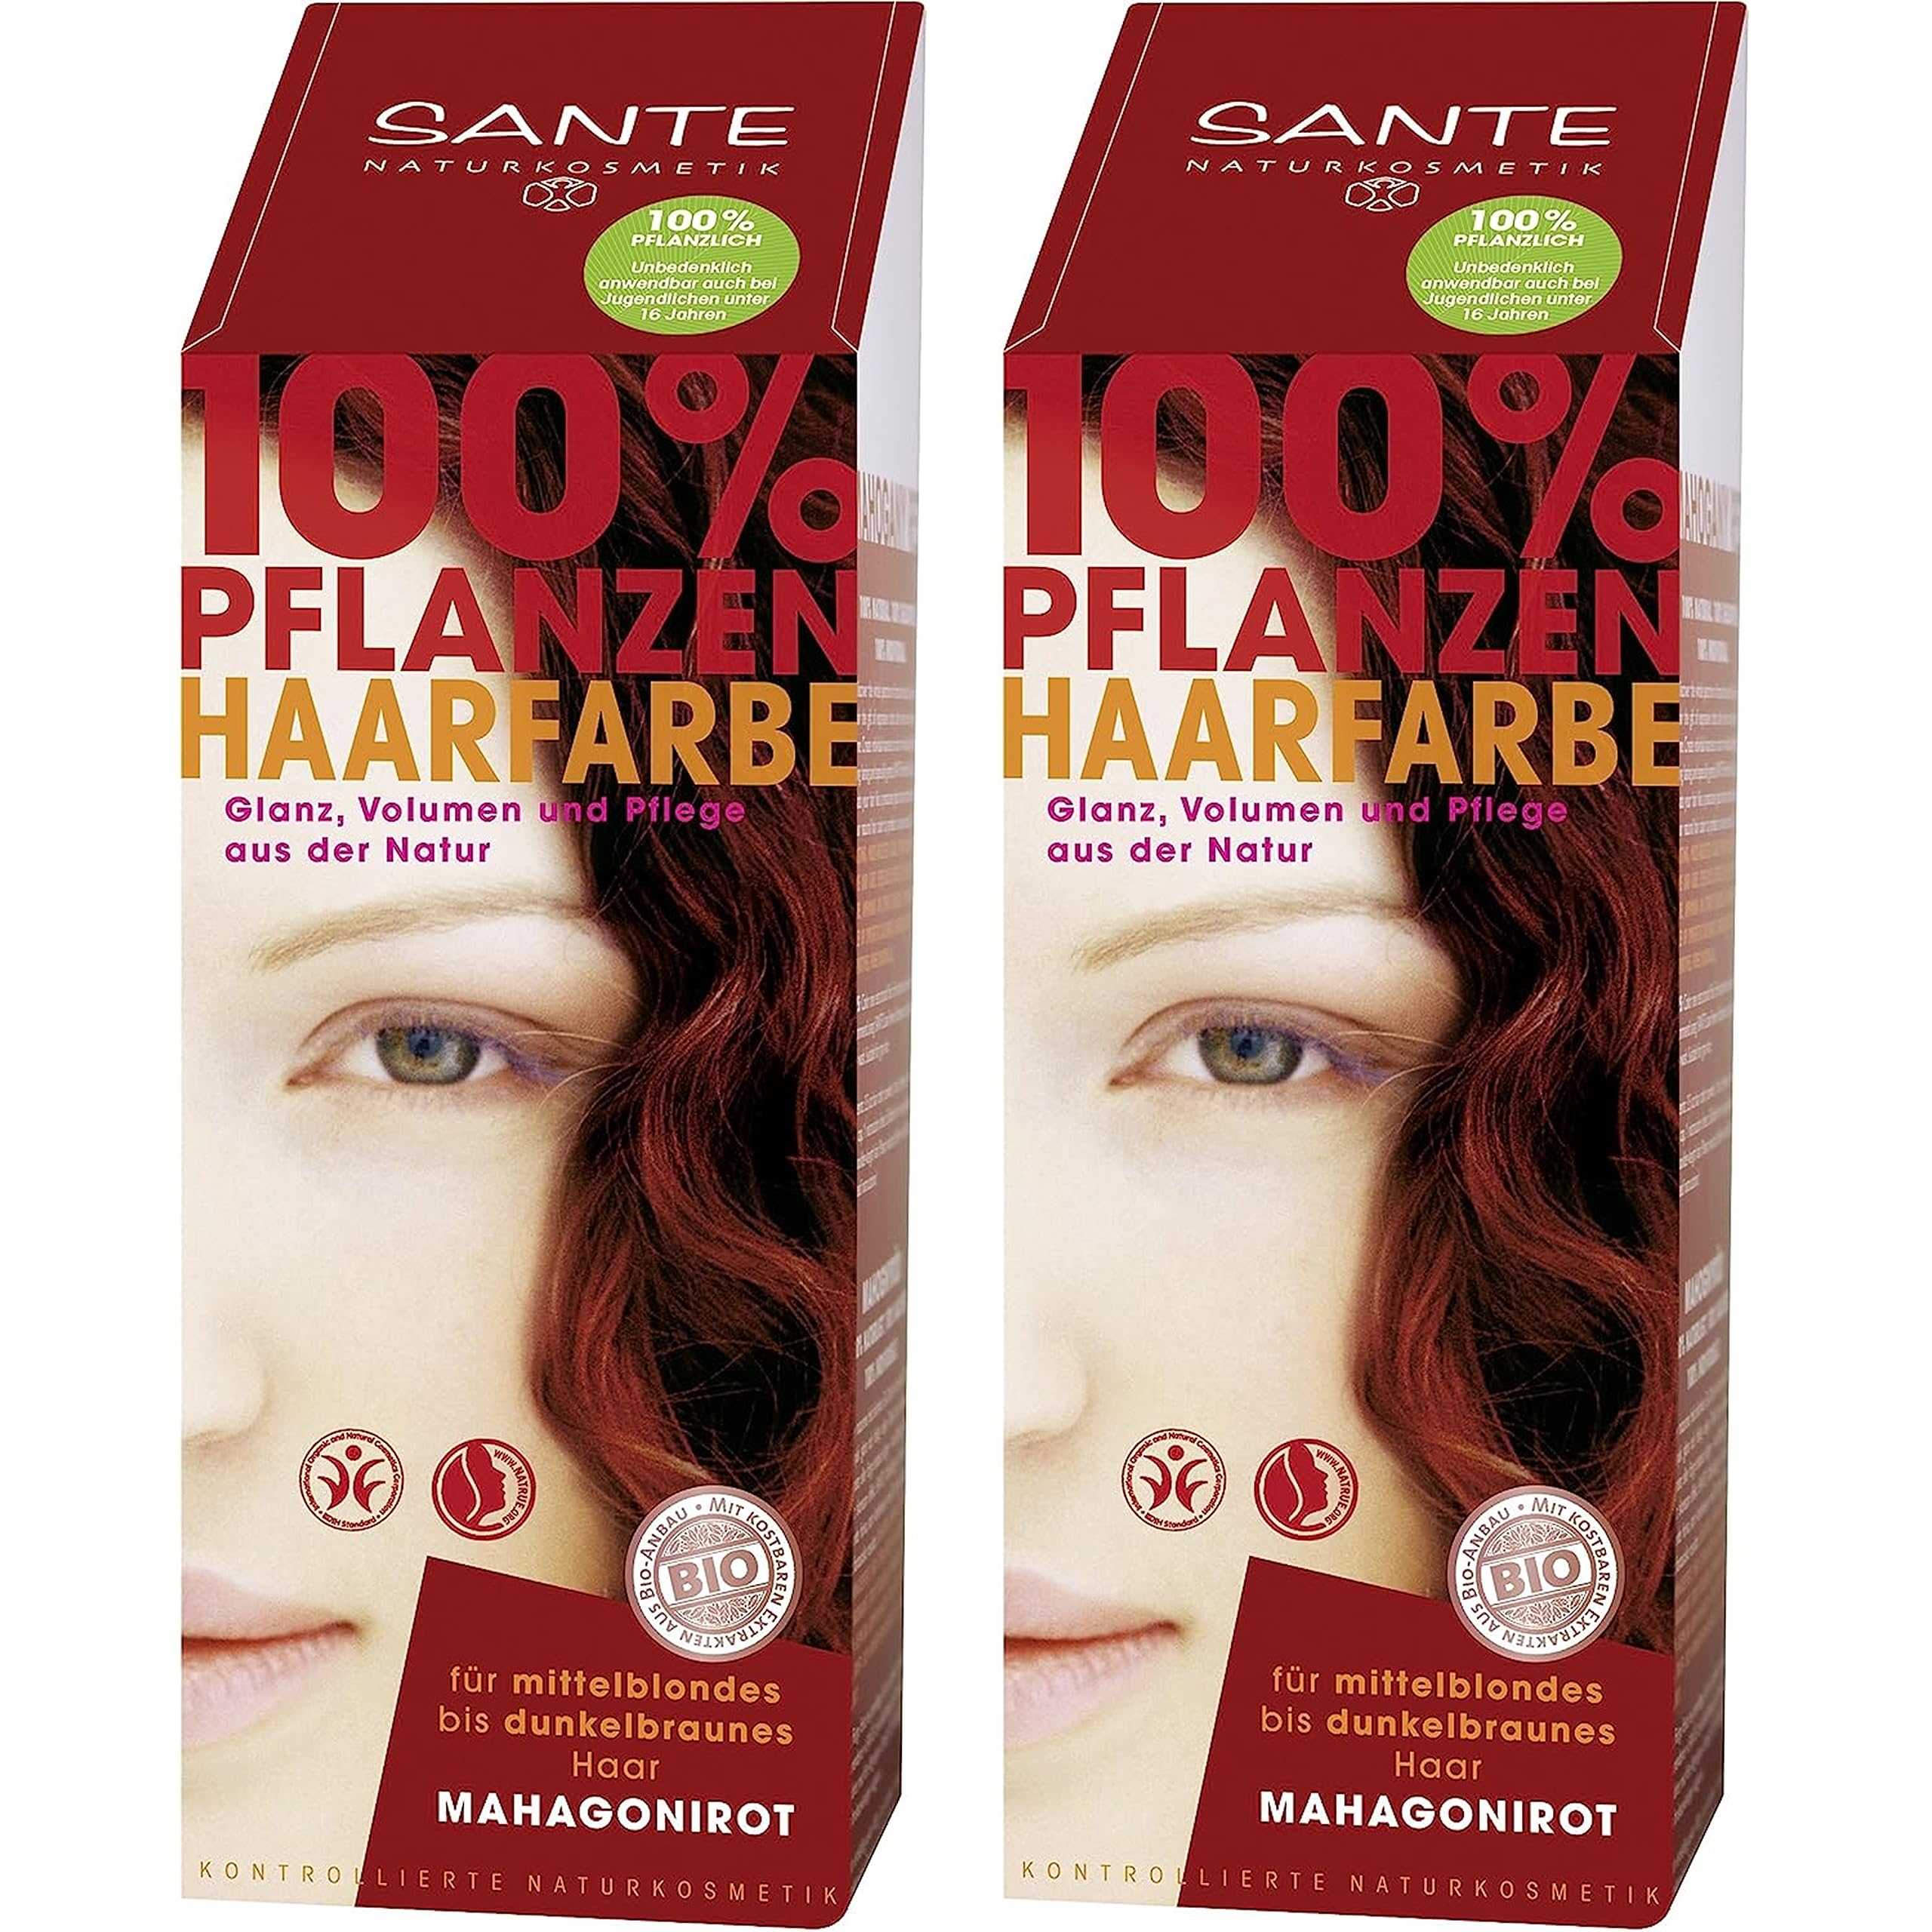 Sante Pflanzenhaarfarbe Haarfarbe im Doppelpack mahagoni 2 x 100 g im Set für ein tolles Farberlebnis